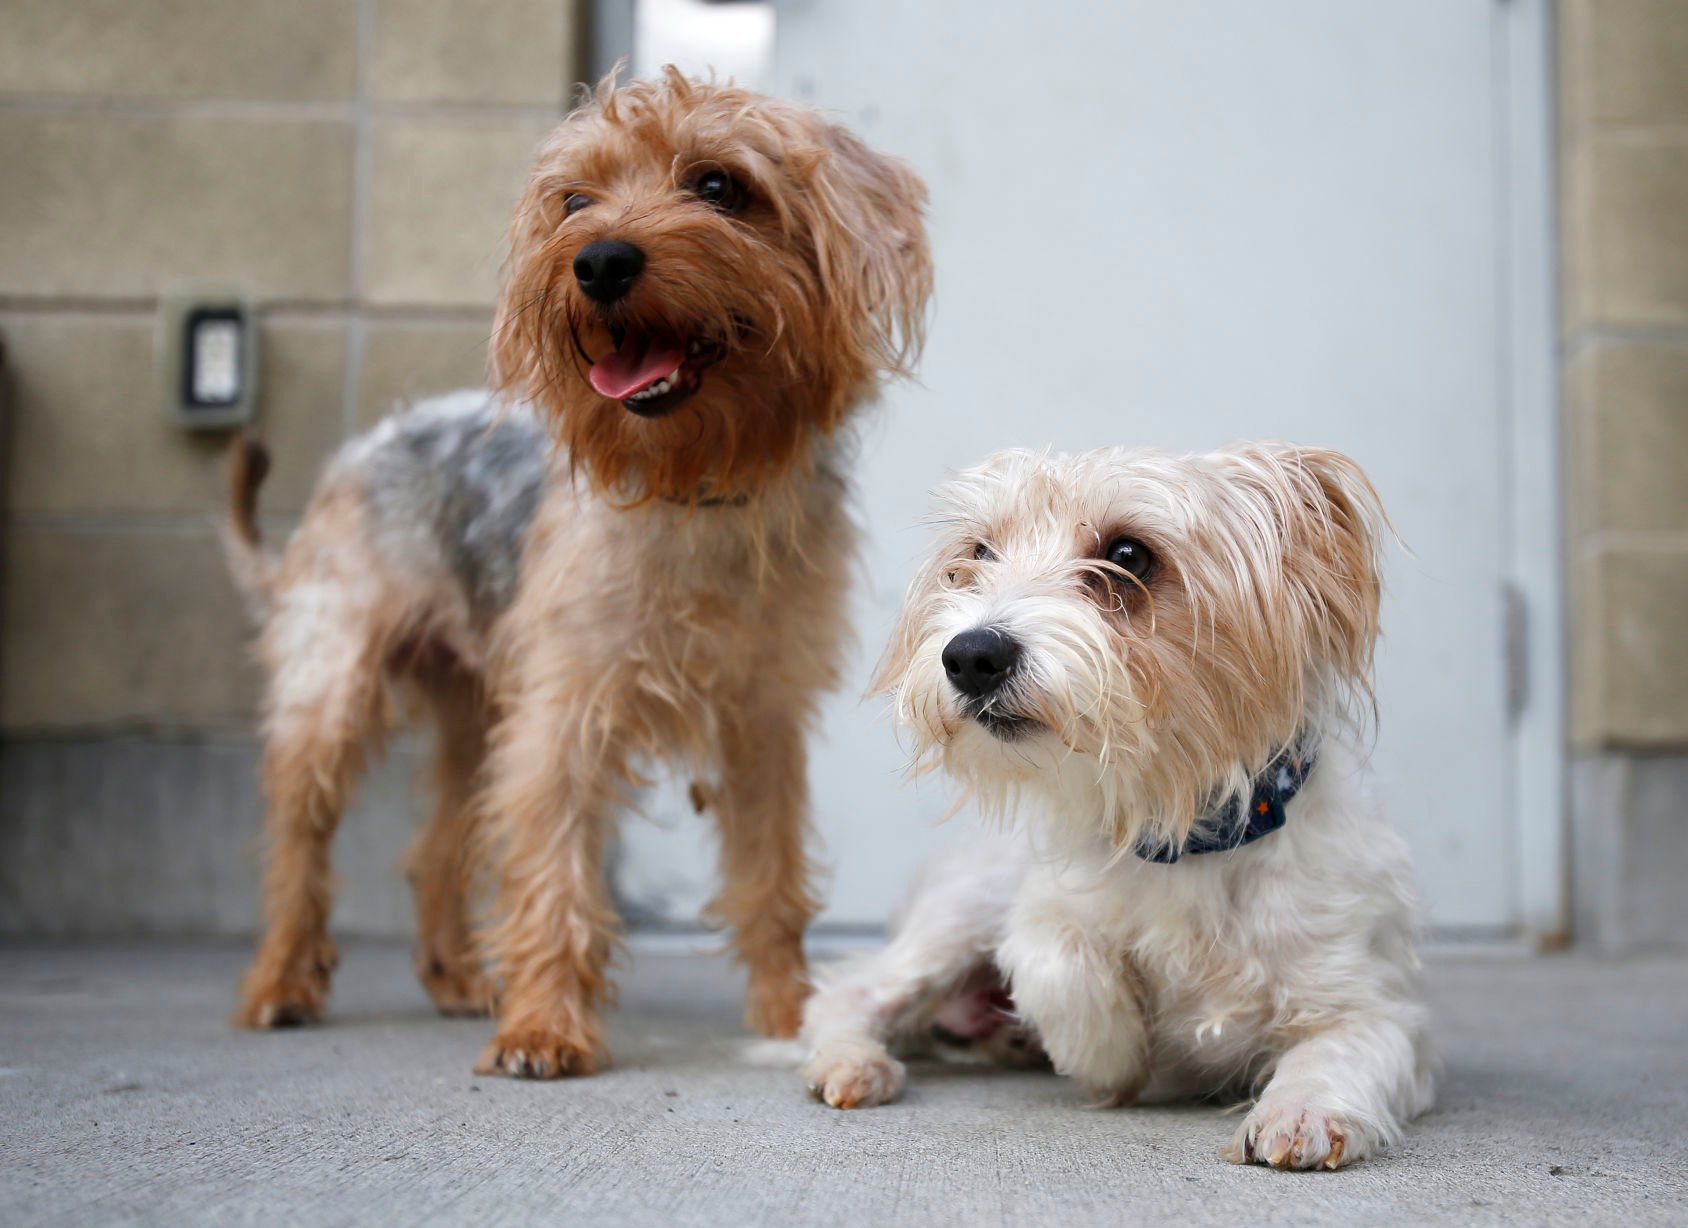 Billings Animal Shelter Adopting Out Dozens Of Yorkie Poodles After Owner Surrenders Them Local News Billingsgazette Com